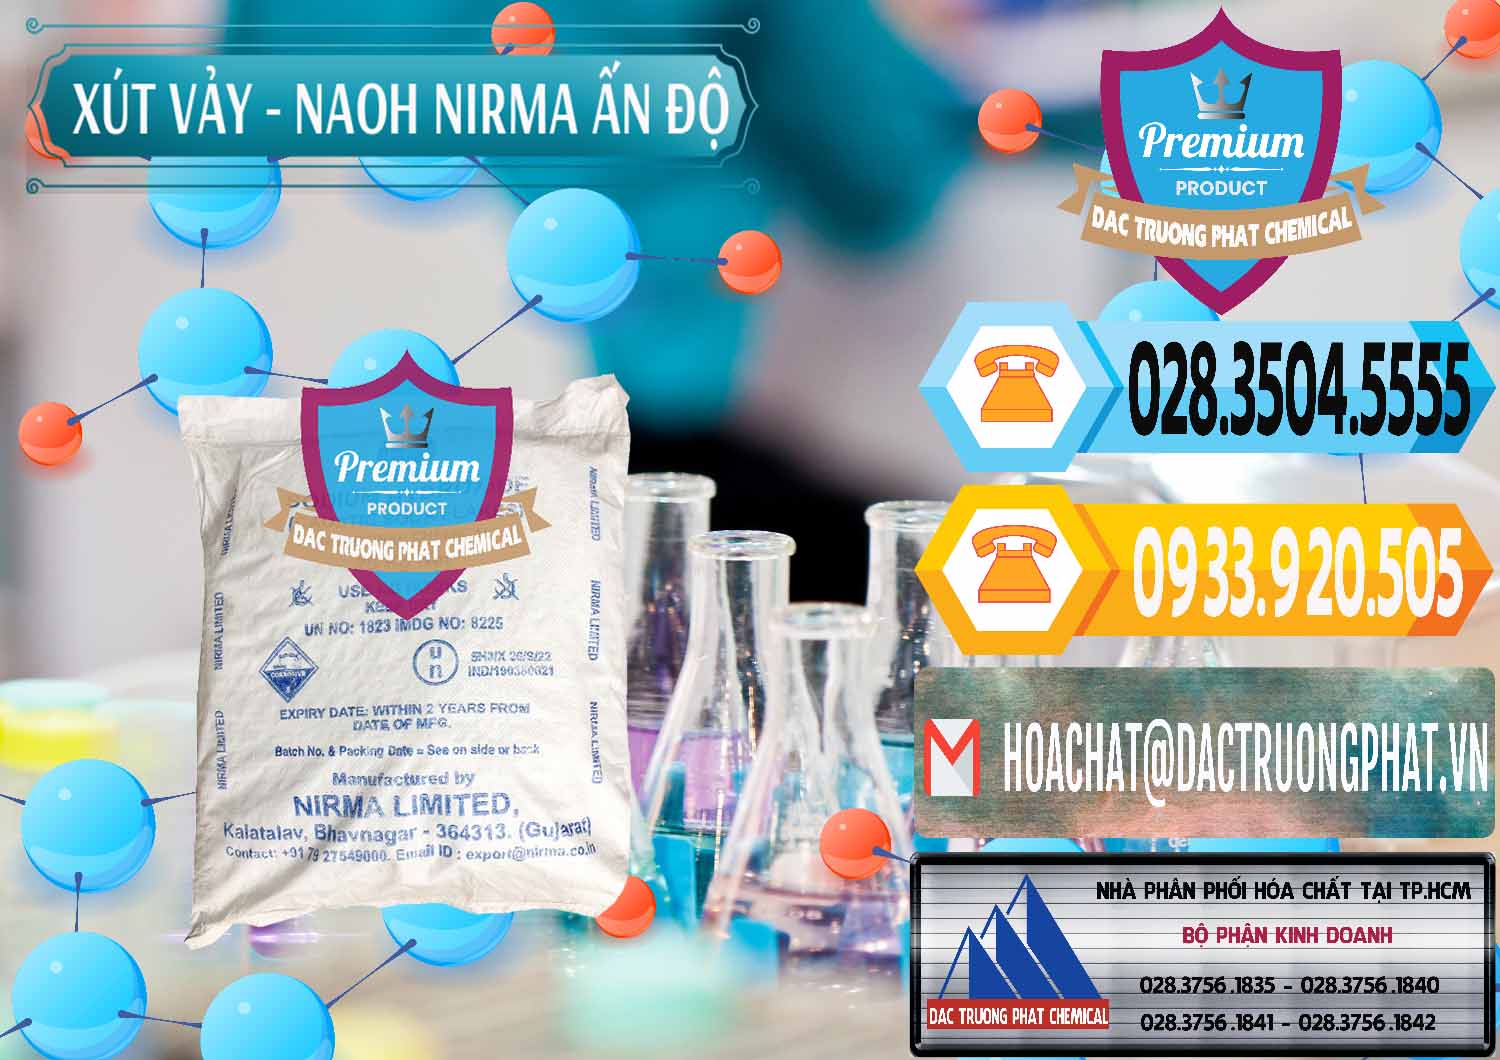 Đơn vị bán và cung cấp Xút Vảy - NaOH Vảy Nirma Ấn Độ India - 0371 - Kinh doanh & cung cấp hóa chất tại TP.HCM - hoachattayrua.net